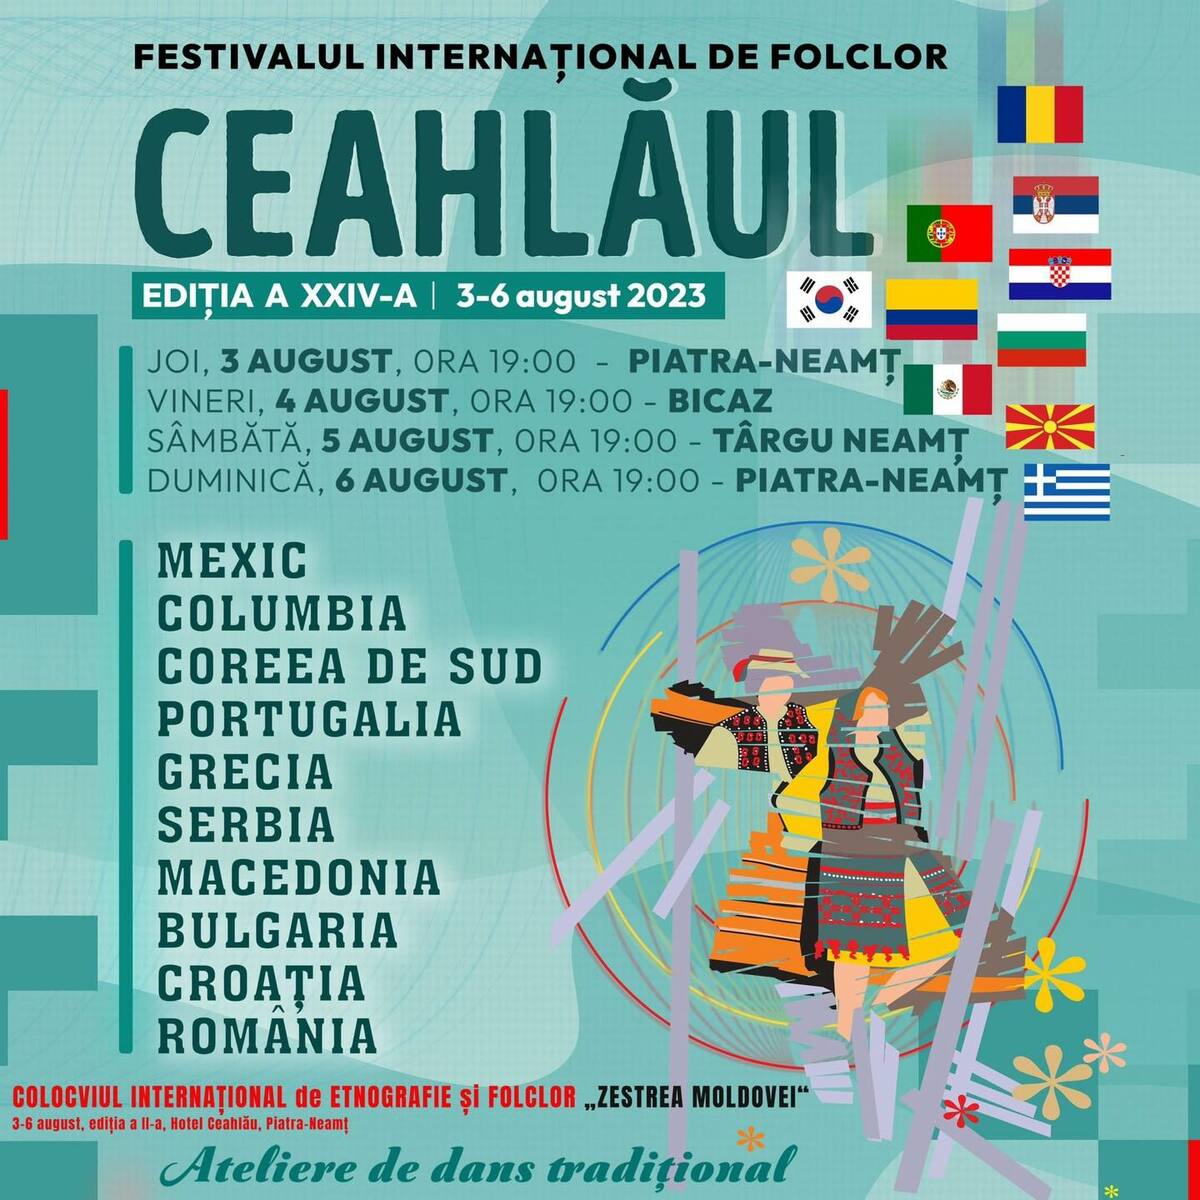 Festivalul Internațional de Folclor Ceahlăul, ajuns la a XXIV-a ediție, a debutat în această seară la Curtea Domnească